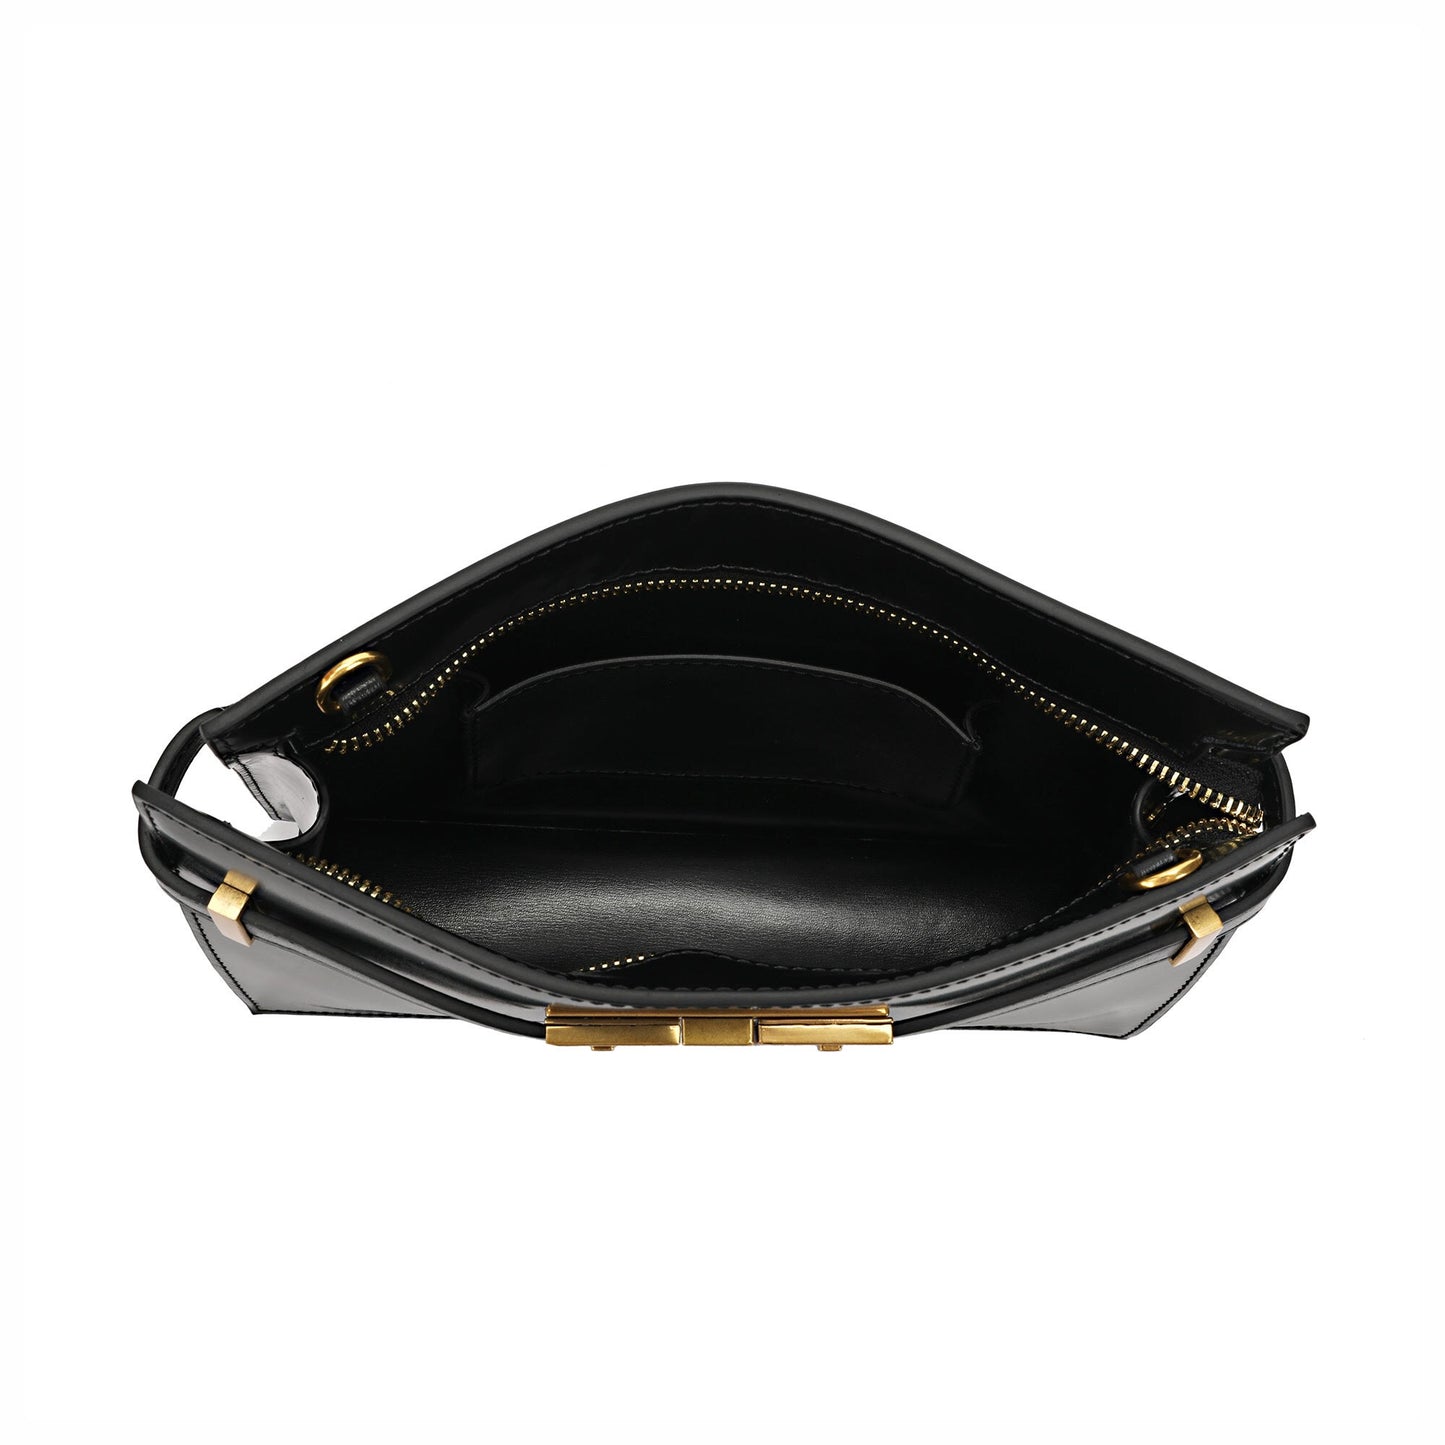 Golden Clasp Leather Clutch/ Shoulder Bag